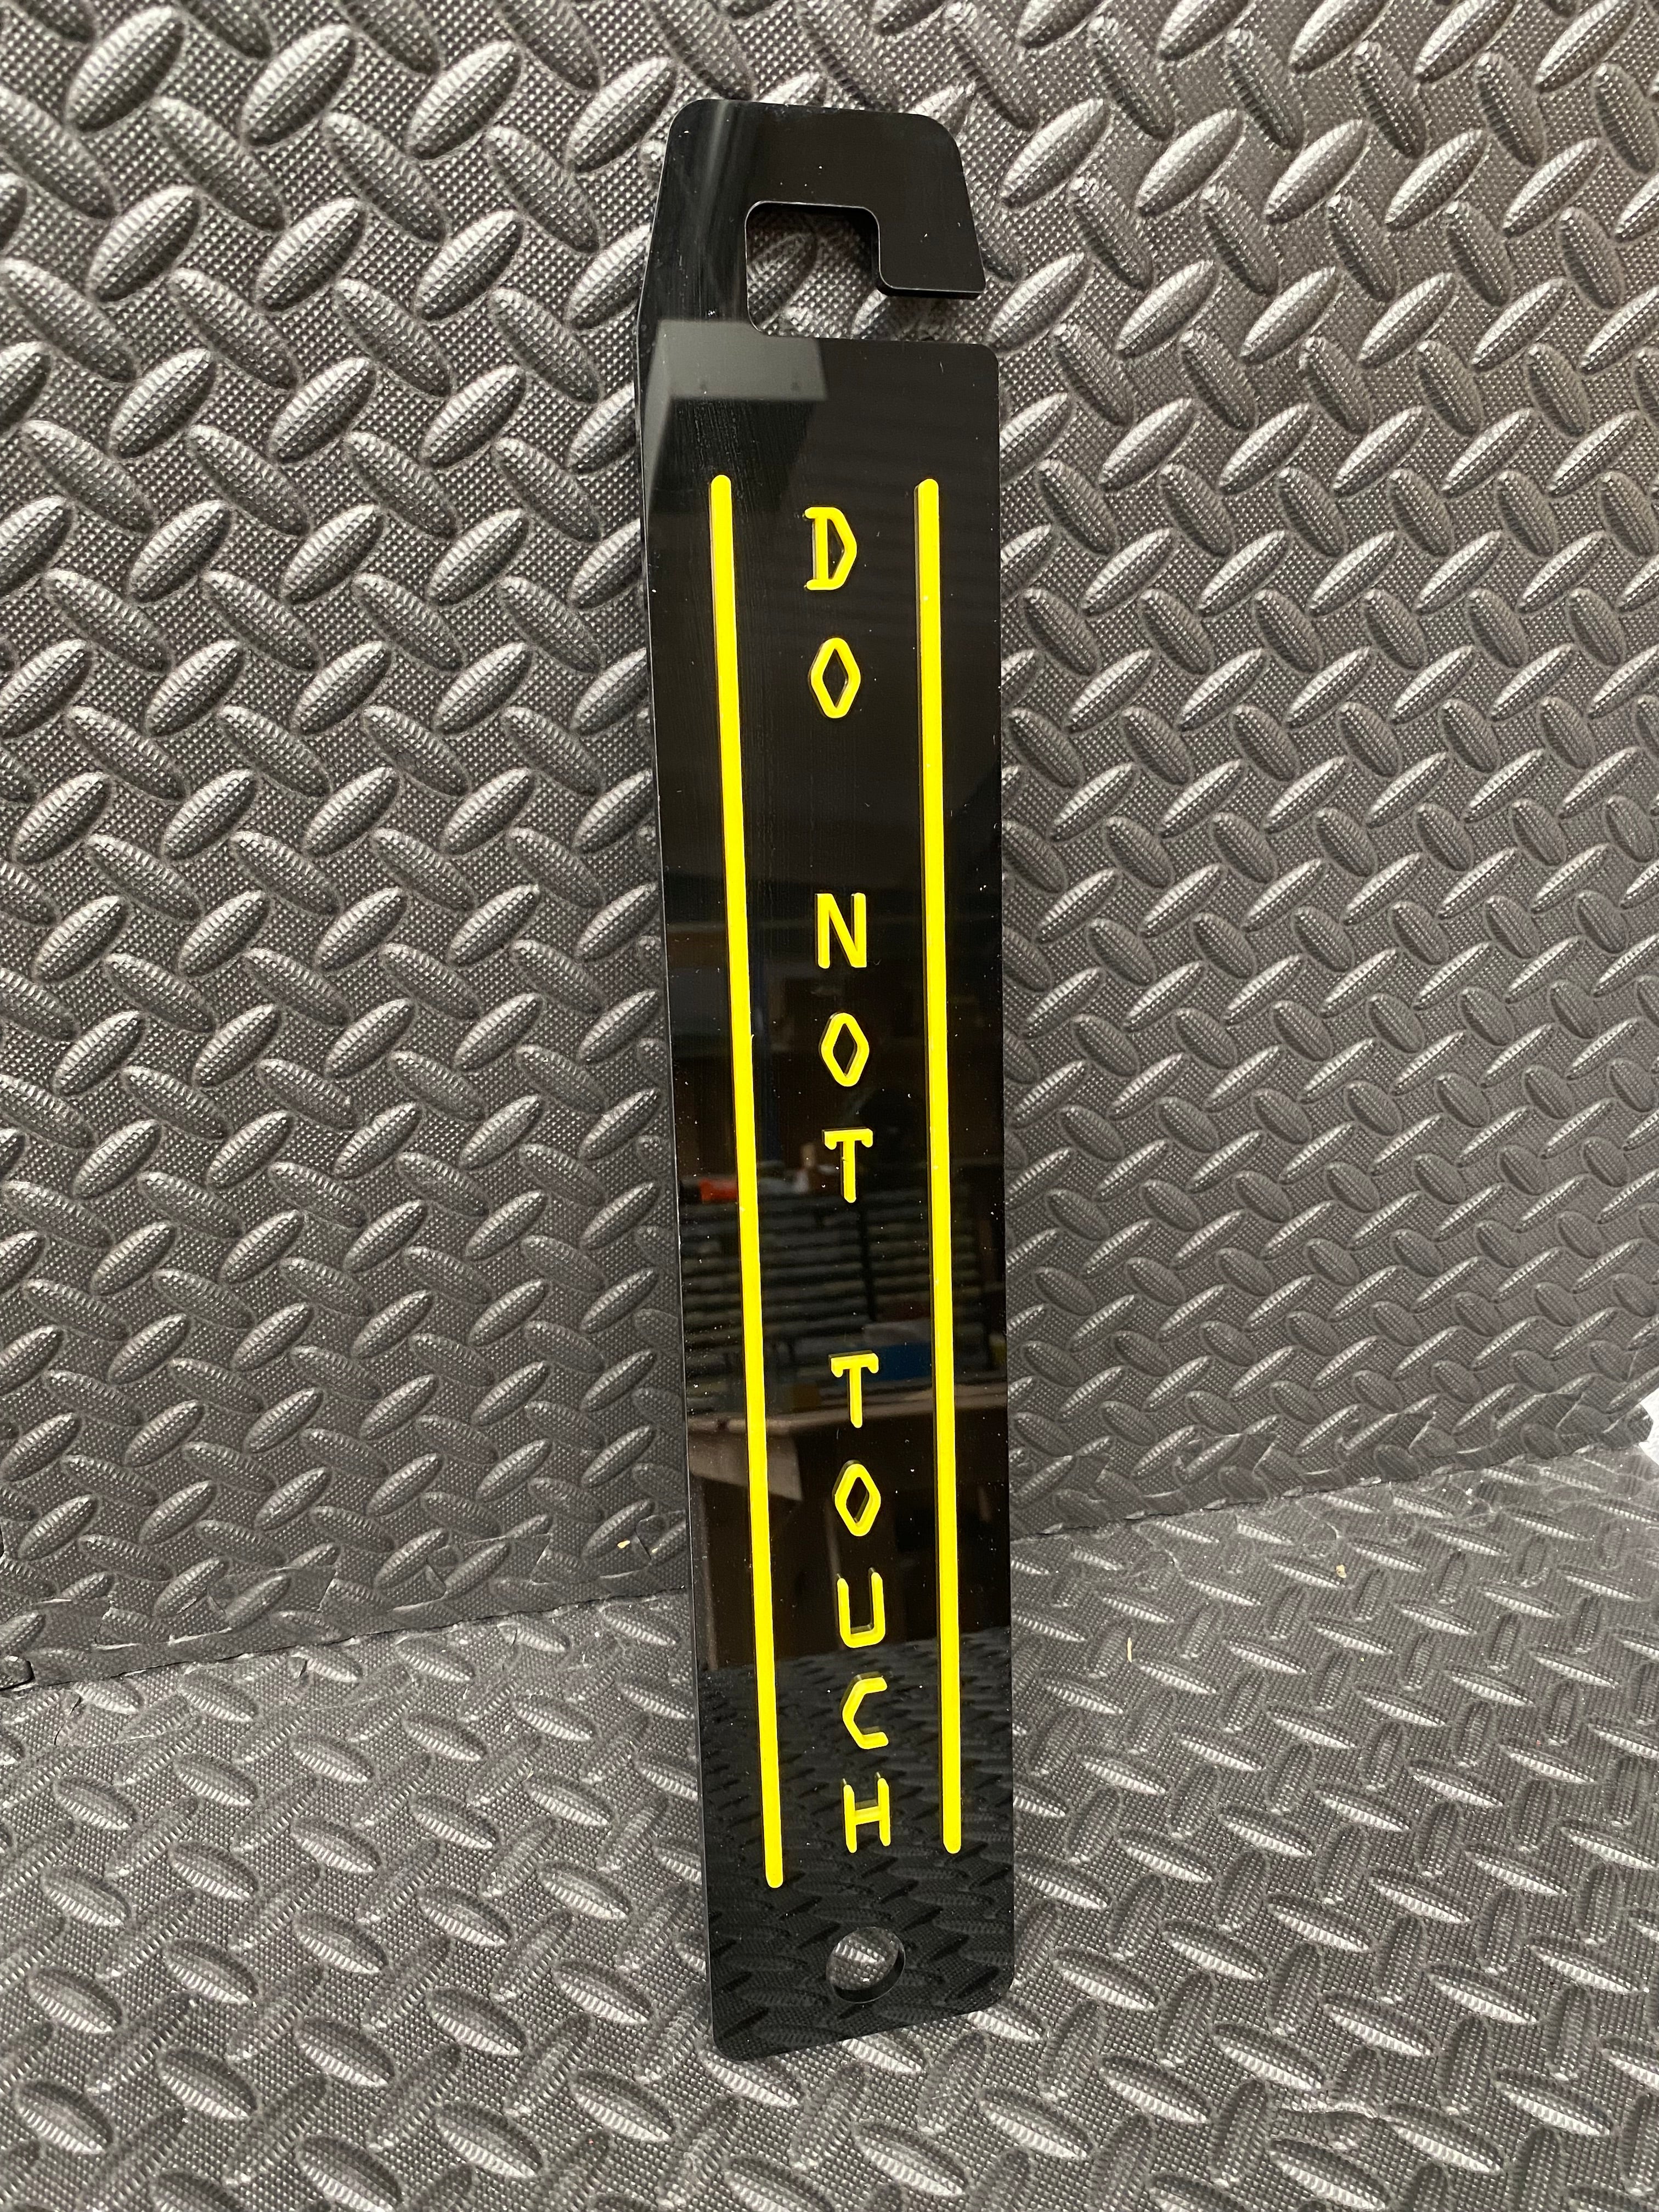 Universal Bonnet Prop - Do Not Touch (4D Acrylic)